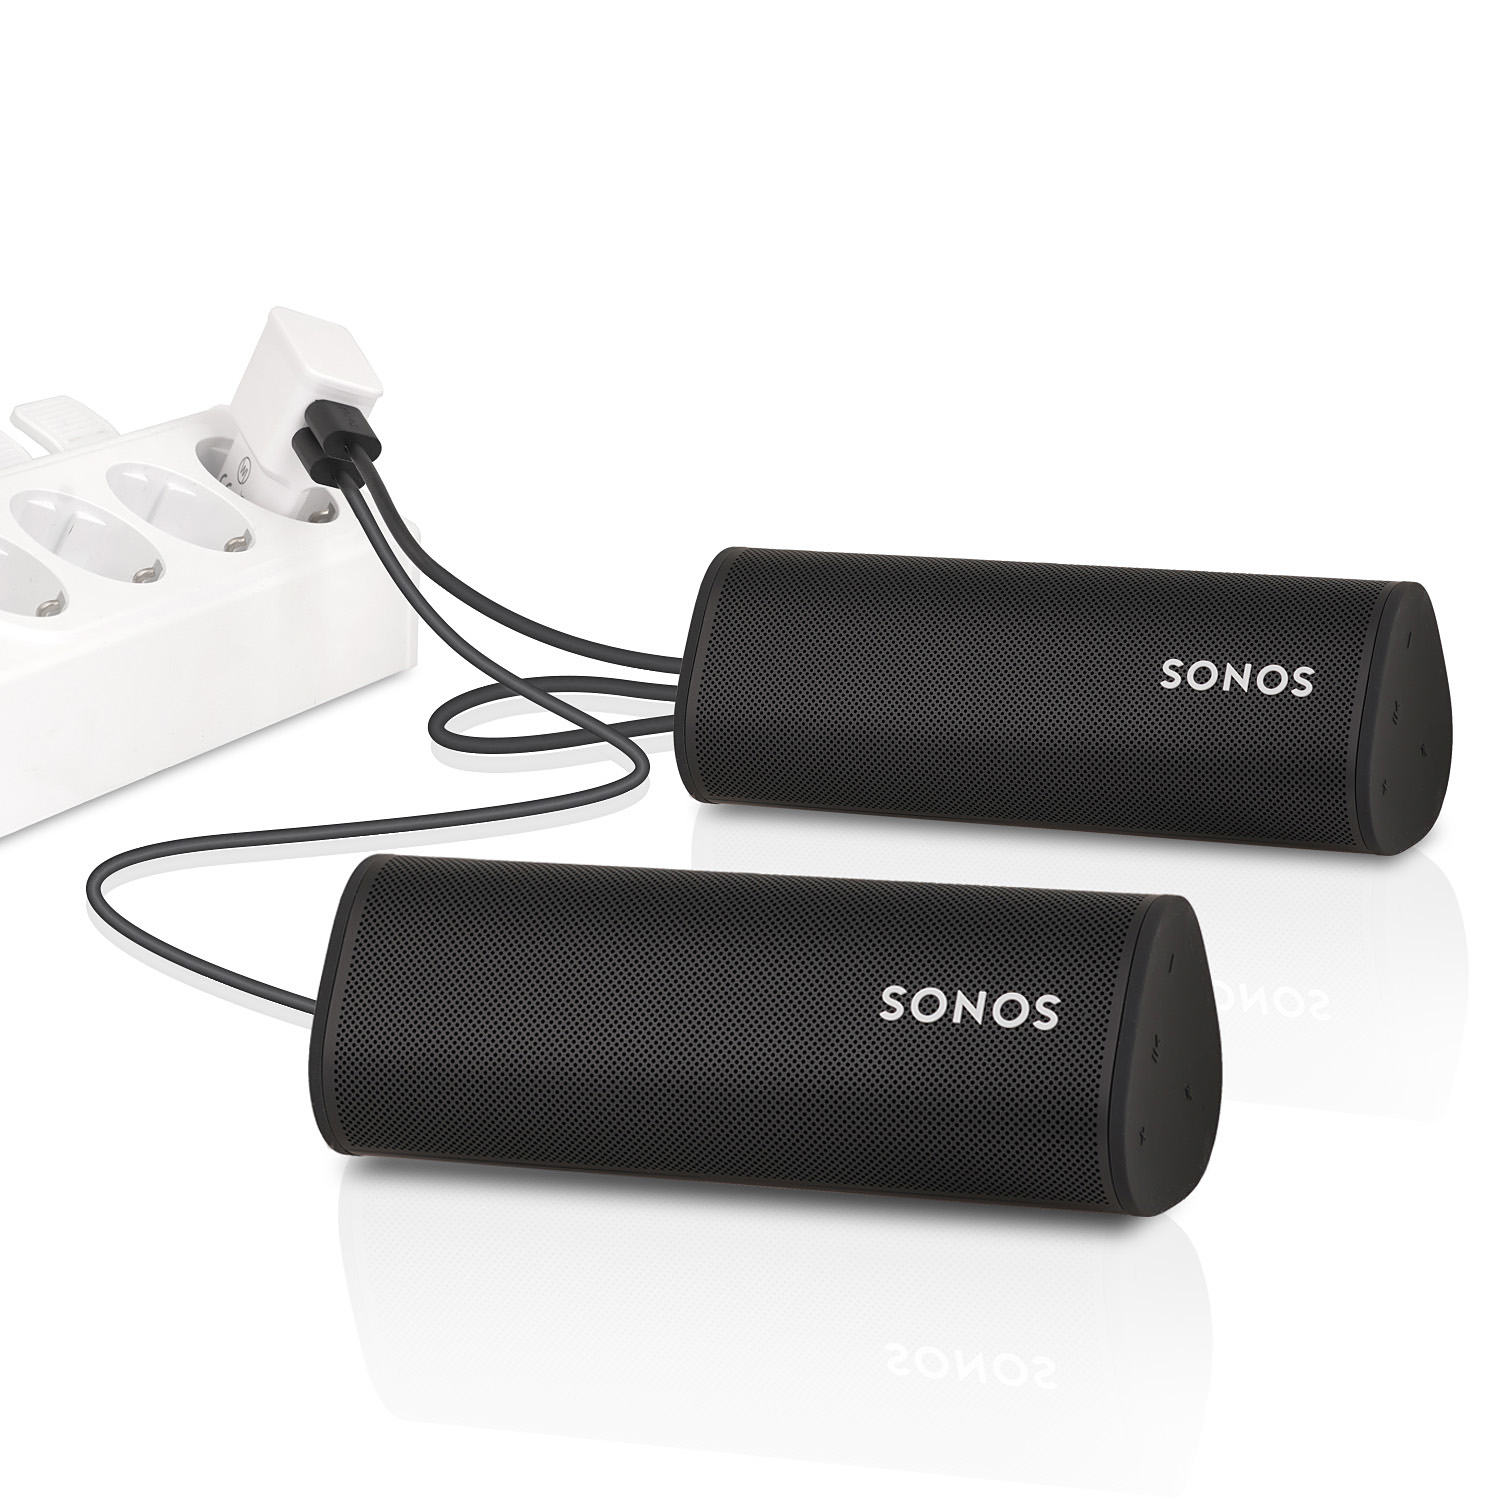 WICKED CHILI Dual USB Ladegerät USB-A weiß USB Sonos (2.4A, ersetzt Roam, für 12W) USB-C für auf Kabel 10W Netzteil Dual Netzteil